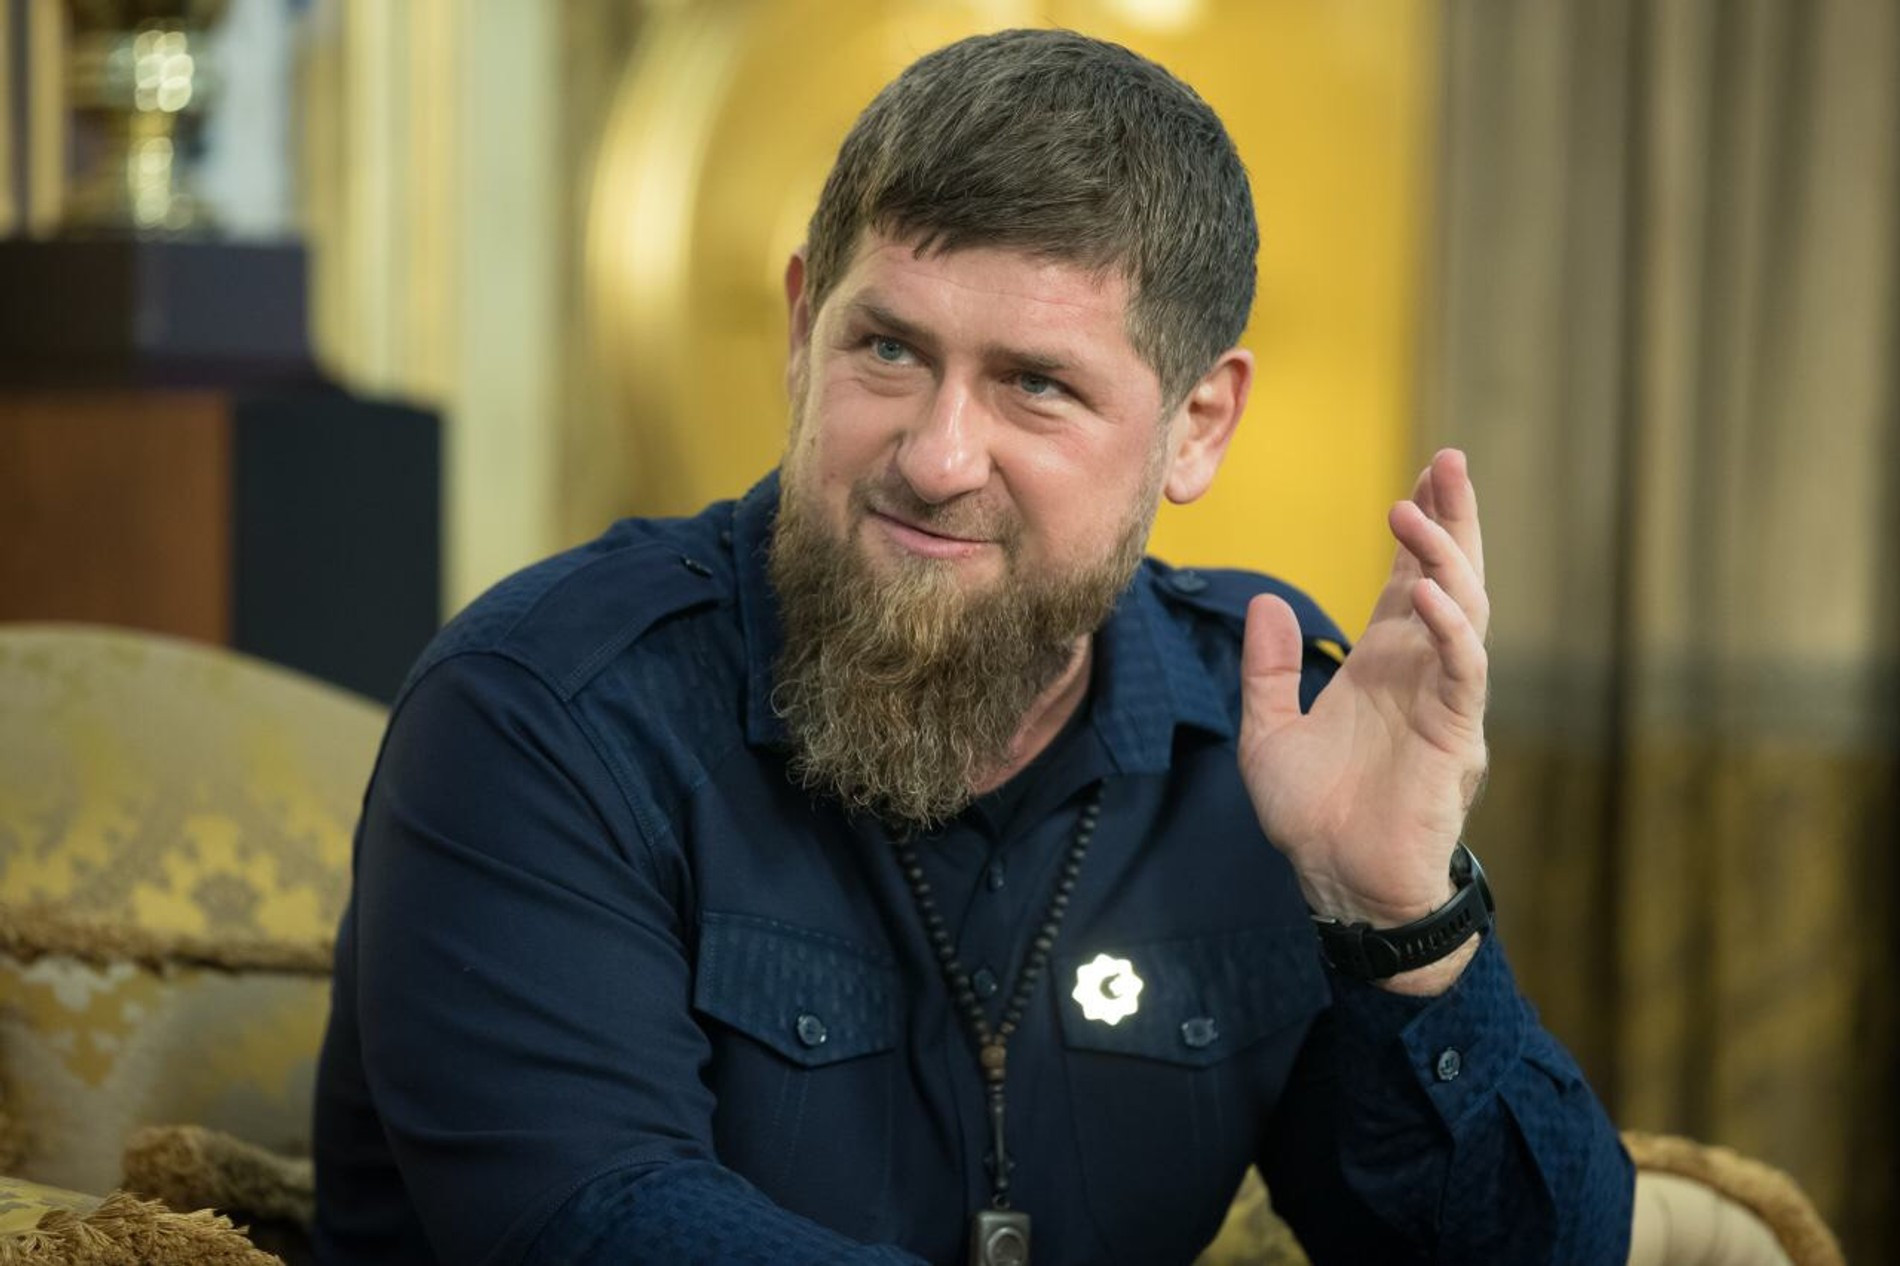 Фото: Telegram-канал Kadyrov_95
Рамзан Кадыров